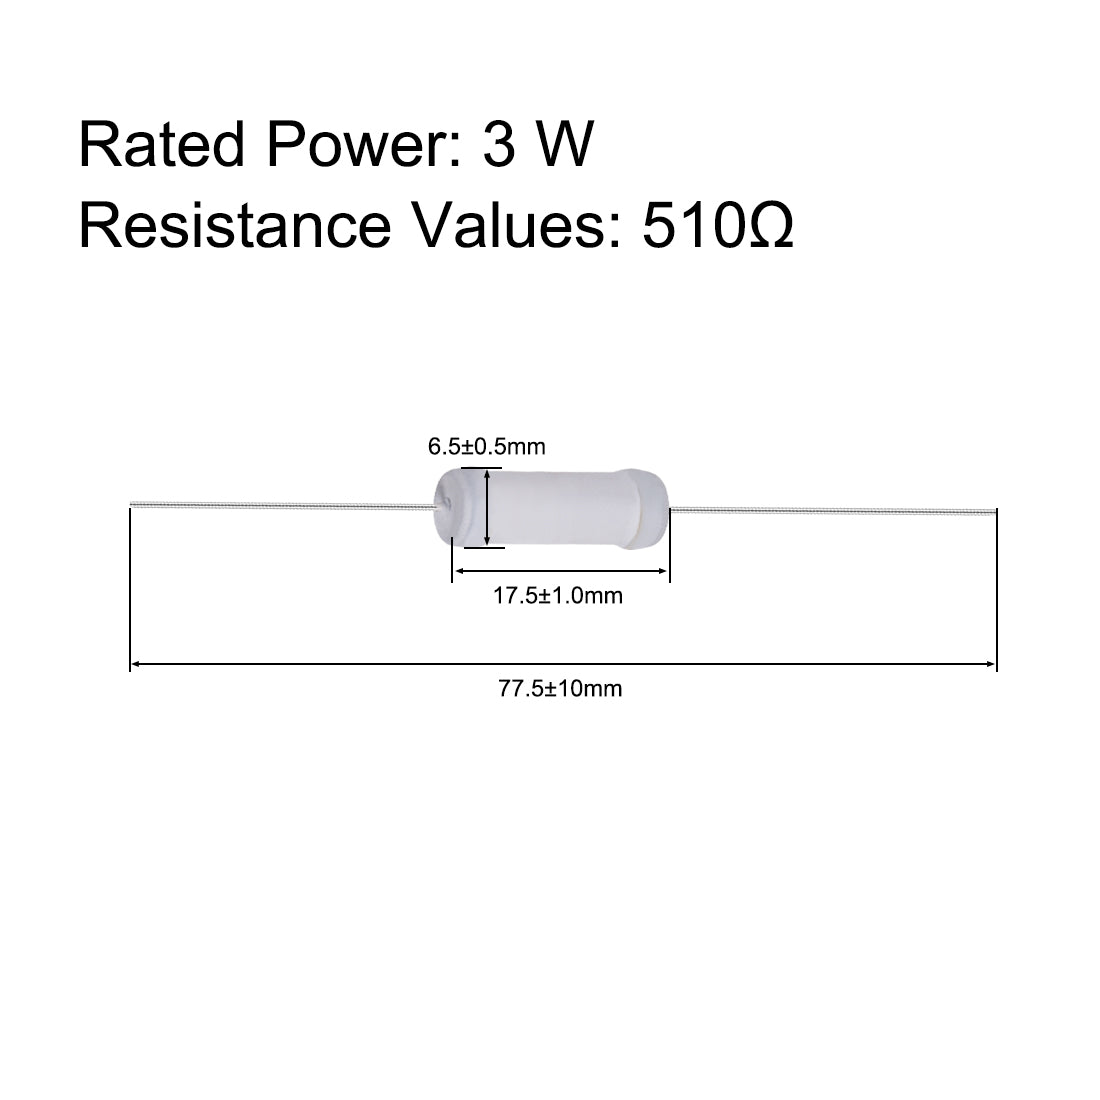 uxcell Uxcell 20pcs 3W 3 Watt Metal Oxide Film Resistor Lead 510 Ohm ±5% Tolerance